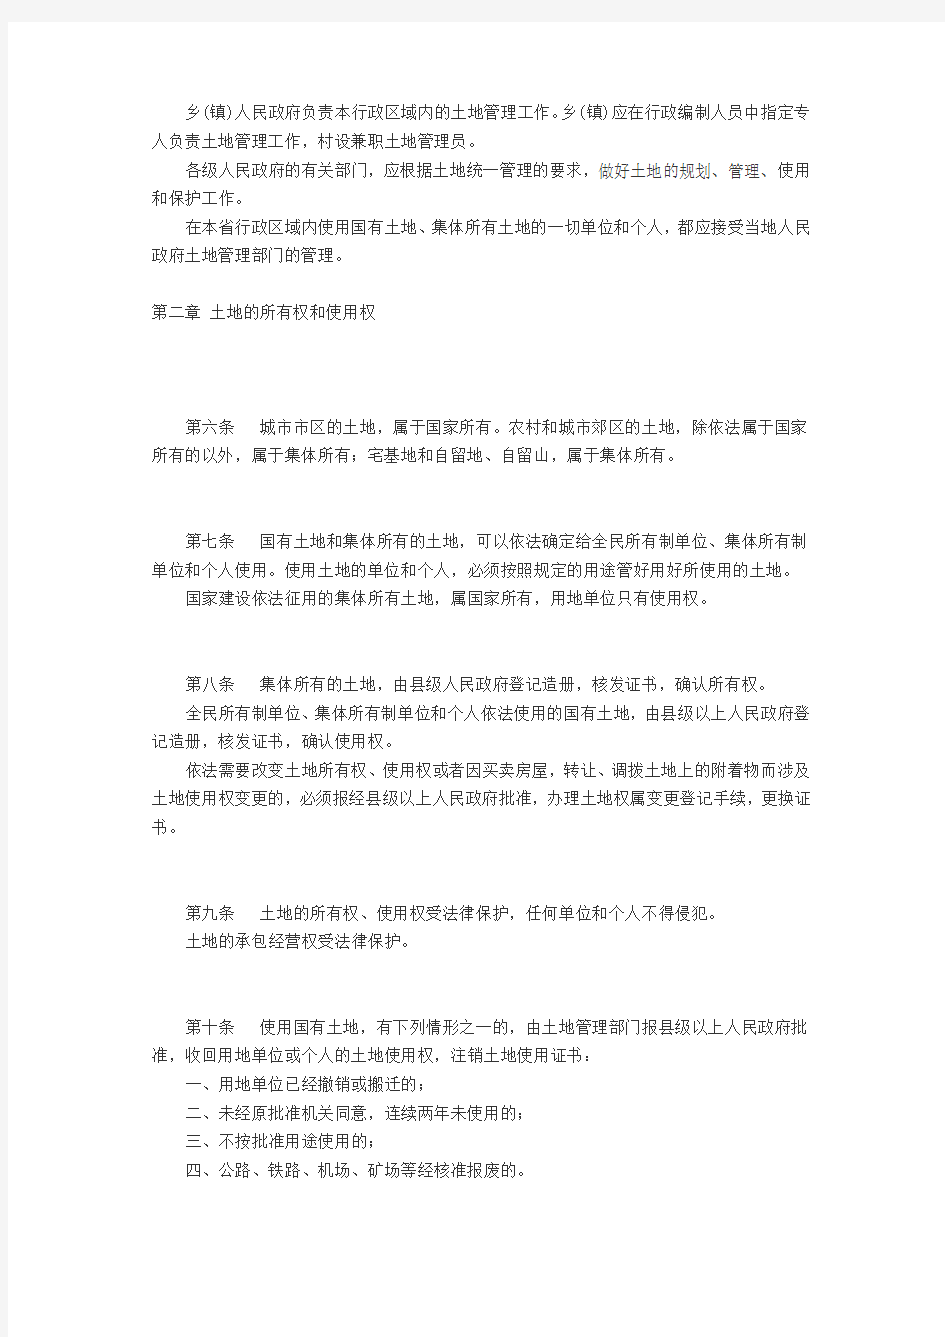 江苏省土地管理实施条例